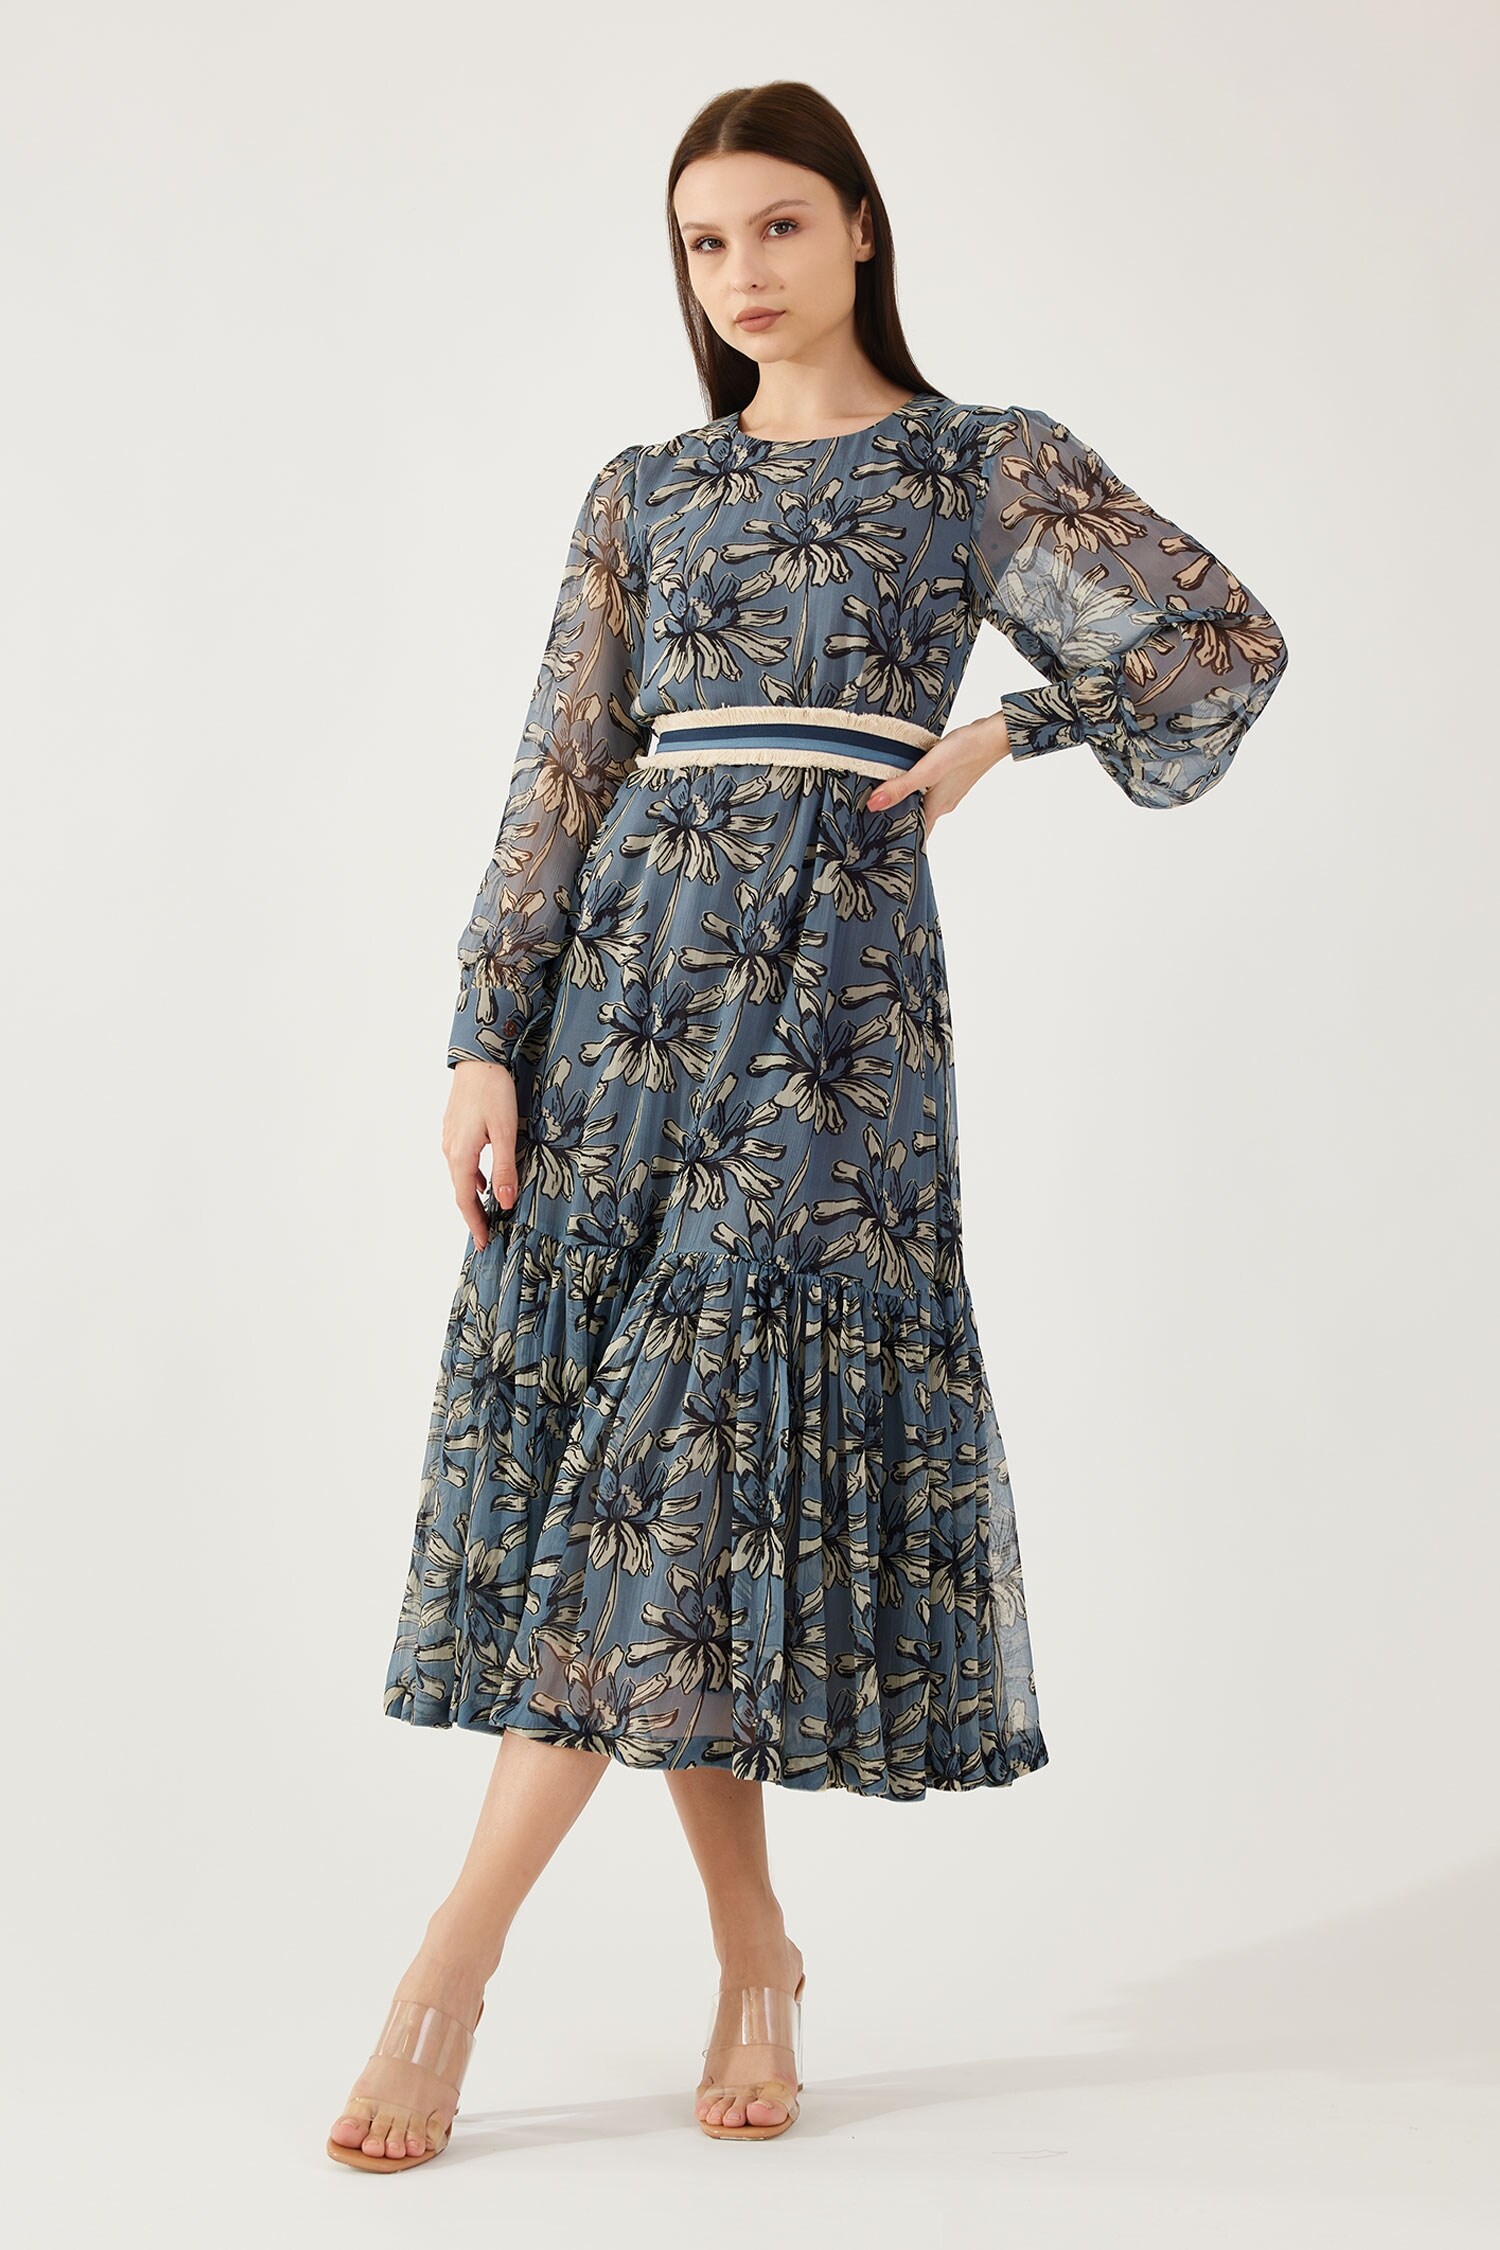 KoAi Blue Chiffon Floral Print Midi Dress